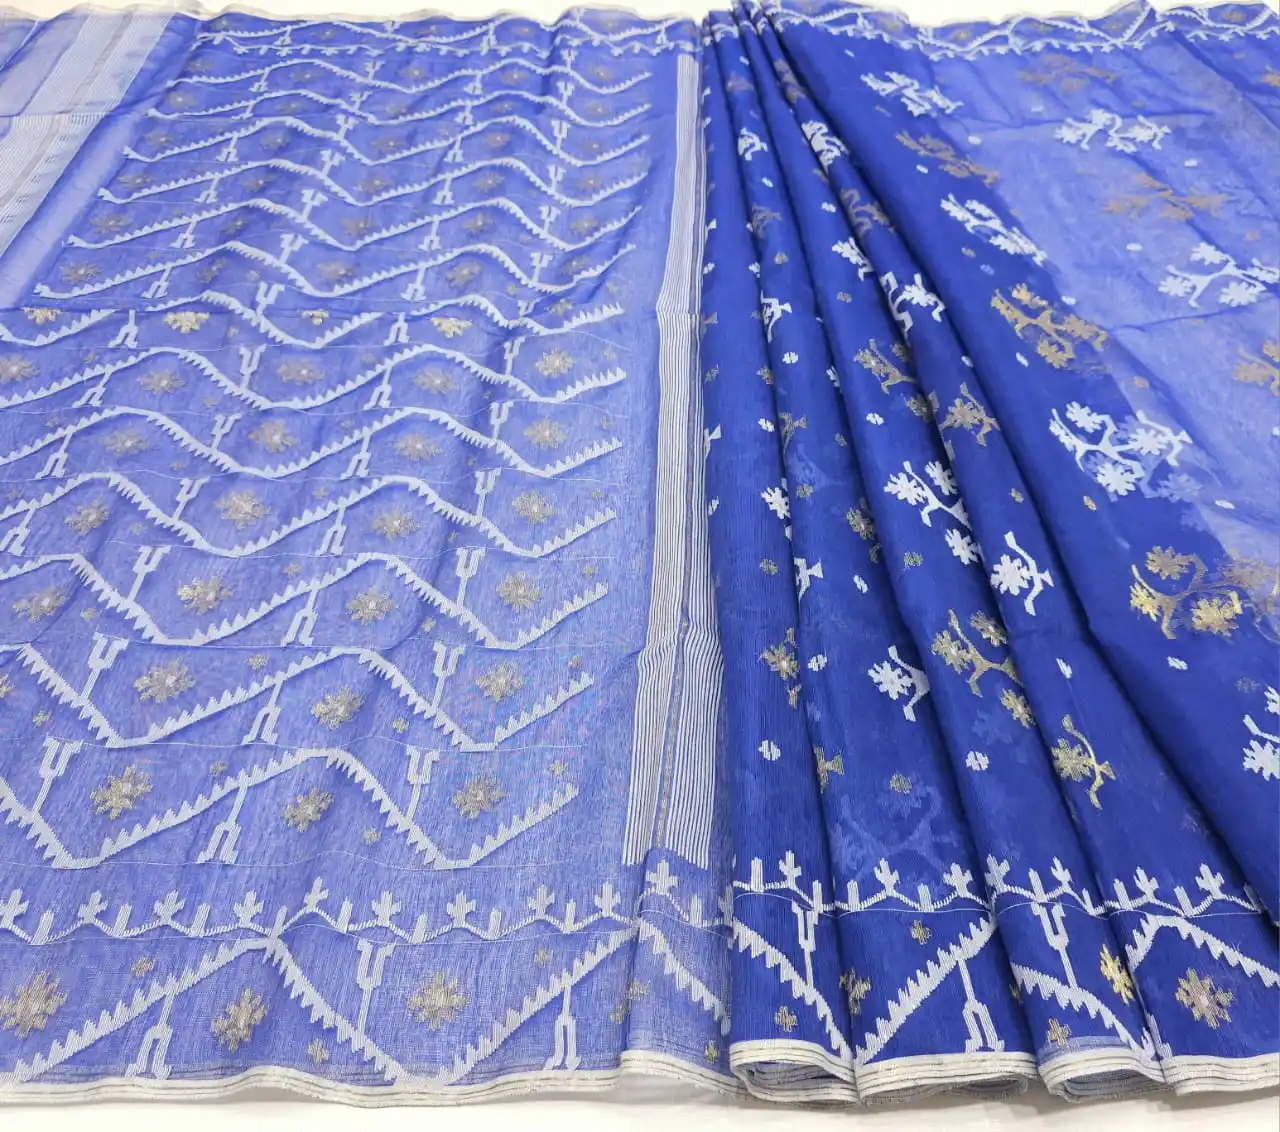 ใหม่ Deshi ดาคาบีสีฟ้า Jamdani แบ่งปันคุณภาพการส่งออกสําหรับผู้หญิง JAMDANI ผ้าสีแดงสีฟ้าสีเขียวทองท้องฟ้าจากบังคลาเทศ